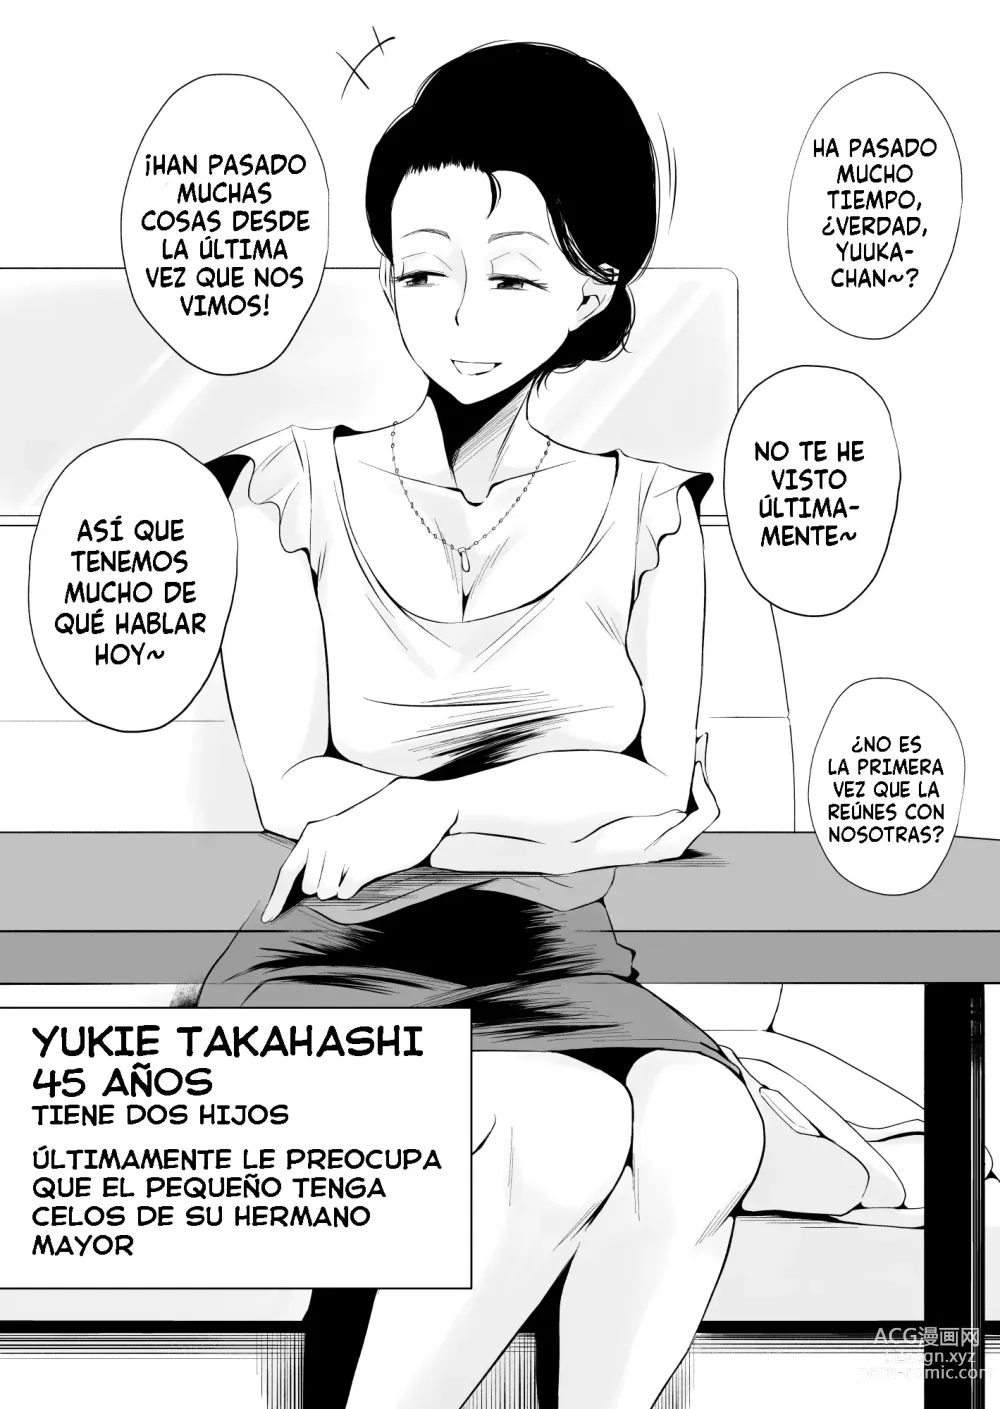 Page 4 of doujinshi ¿Cuál mamá te gusta más? ~La Familia Yamaguchi~